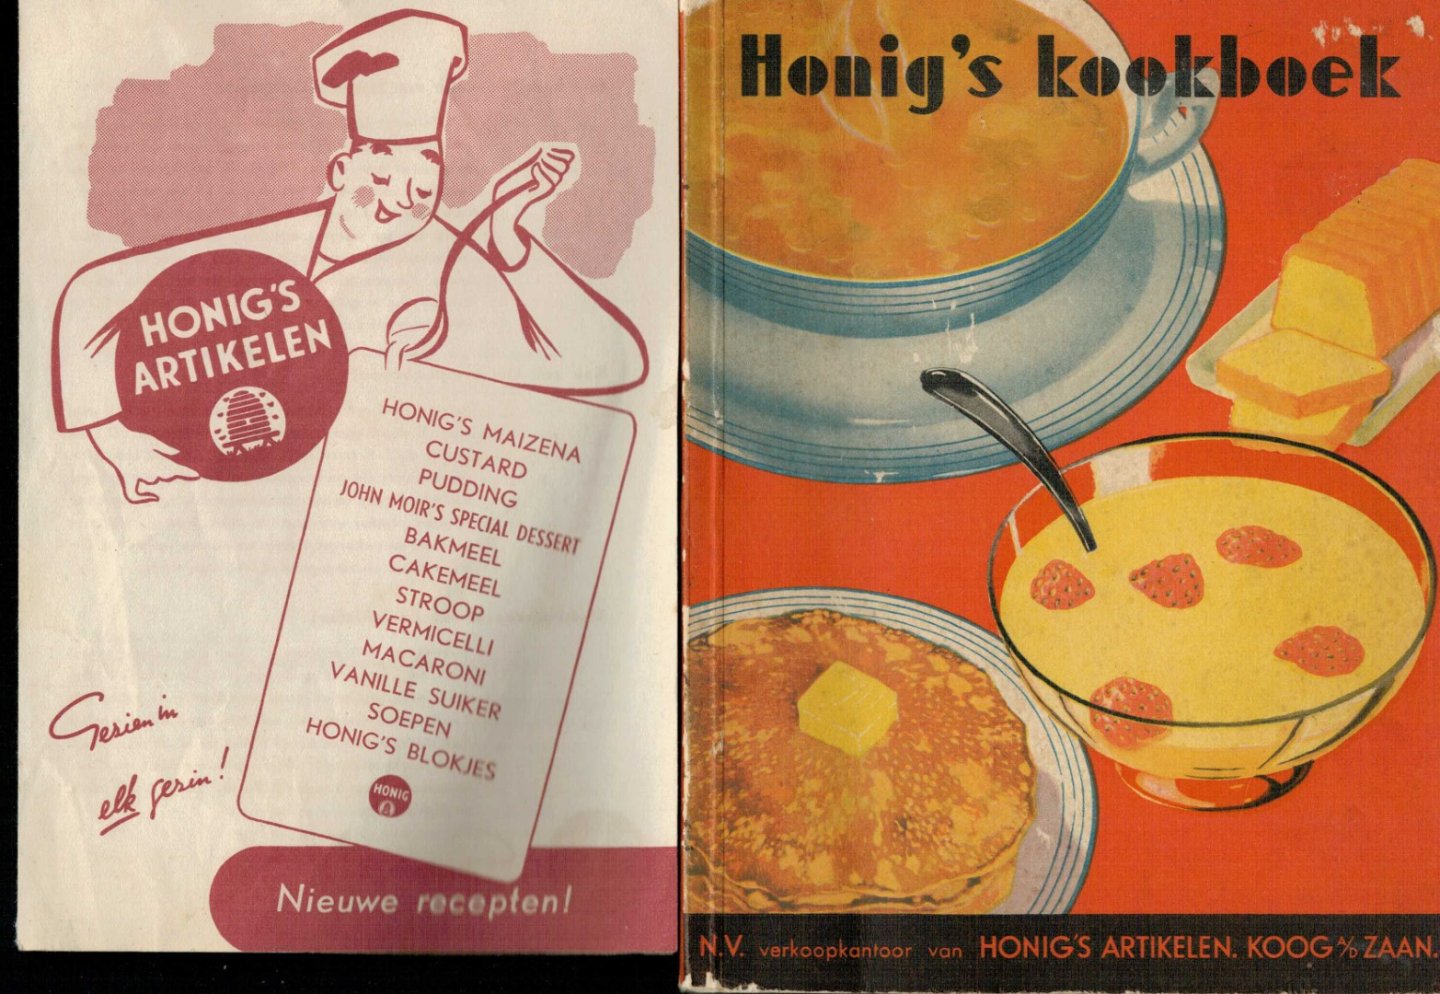 Sonsbeek, G.A. van./Knipscheer, G.D. - Honig's Kookboek BONUS folder met nieuwe recepten